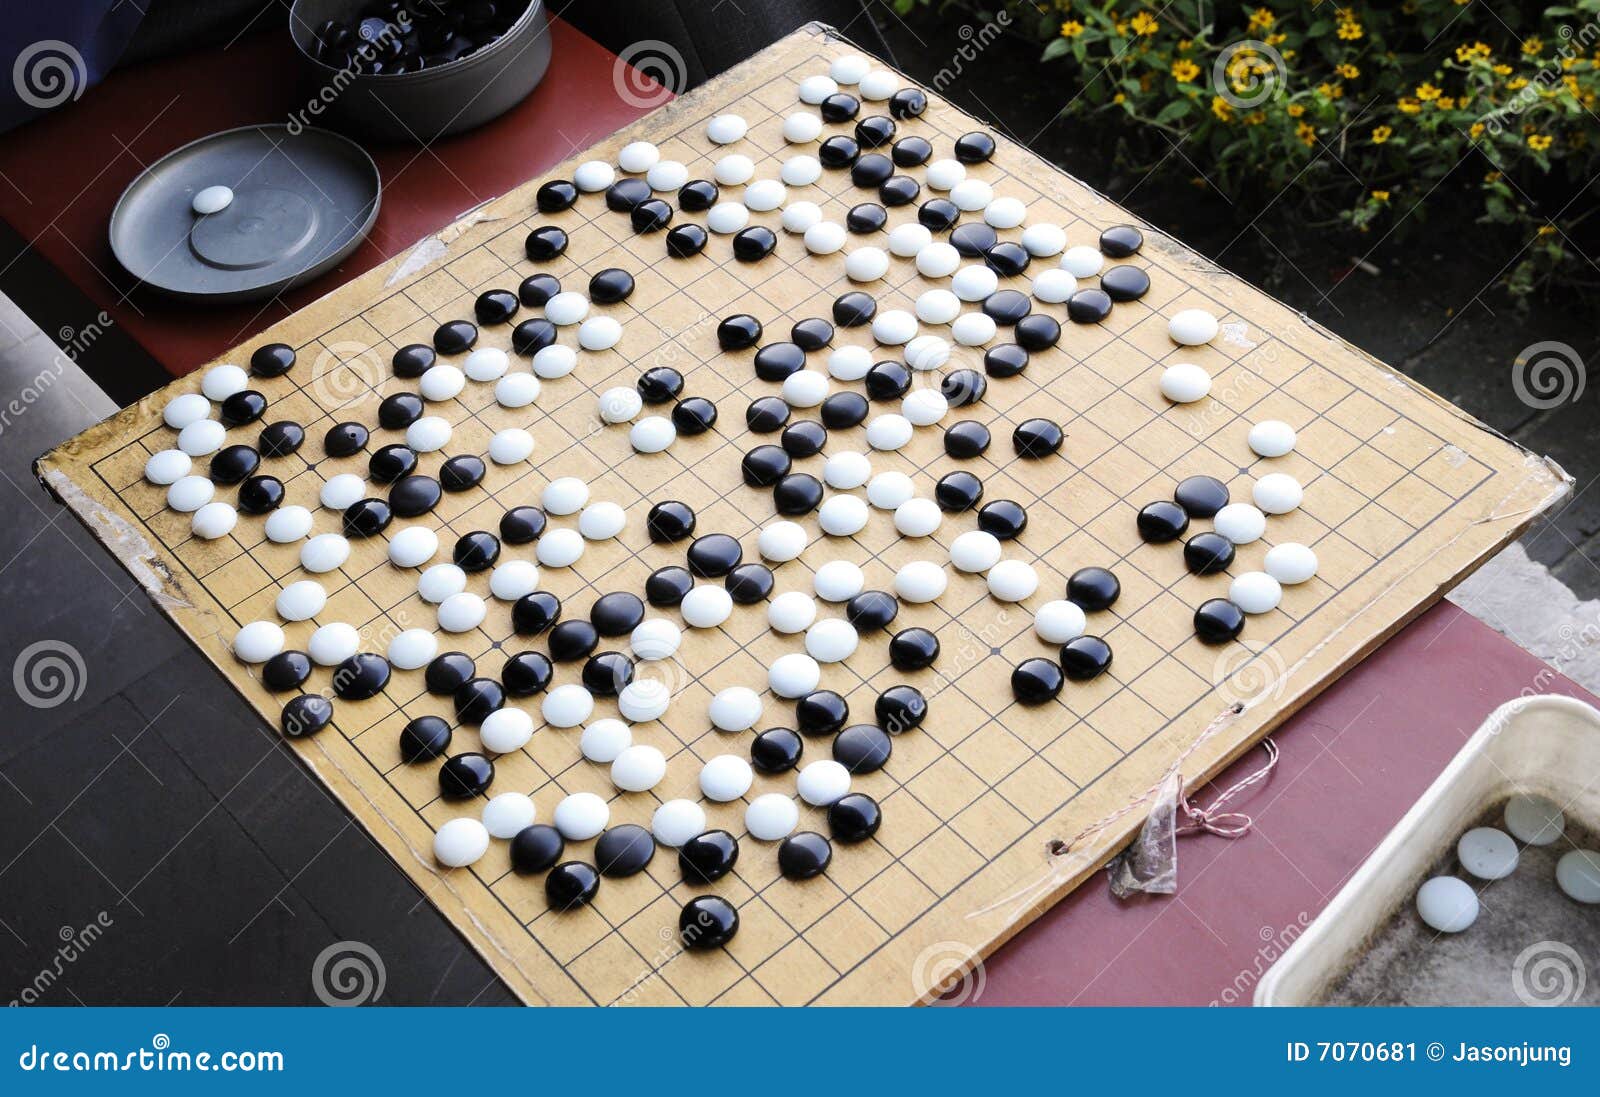 Китайская игра большая. Китайская игра сянци. Китайские шахматы. Китайская игра похожая на шахматы. Китайские шахматы сянци.